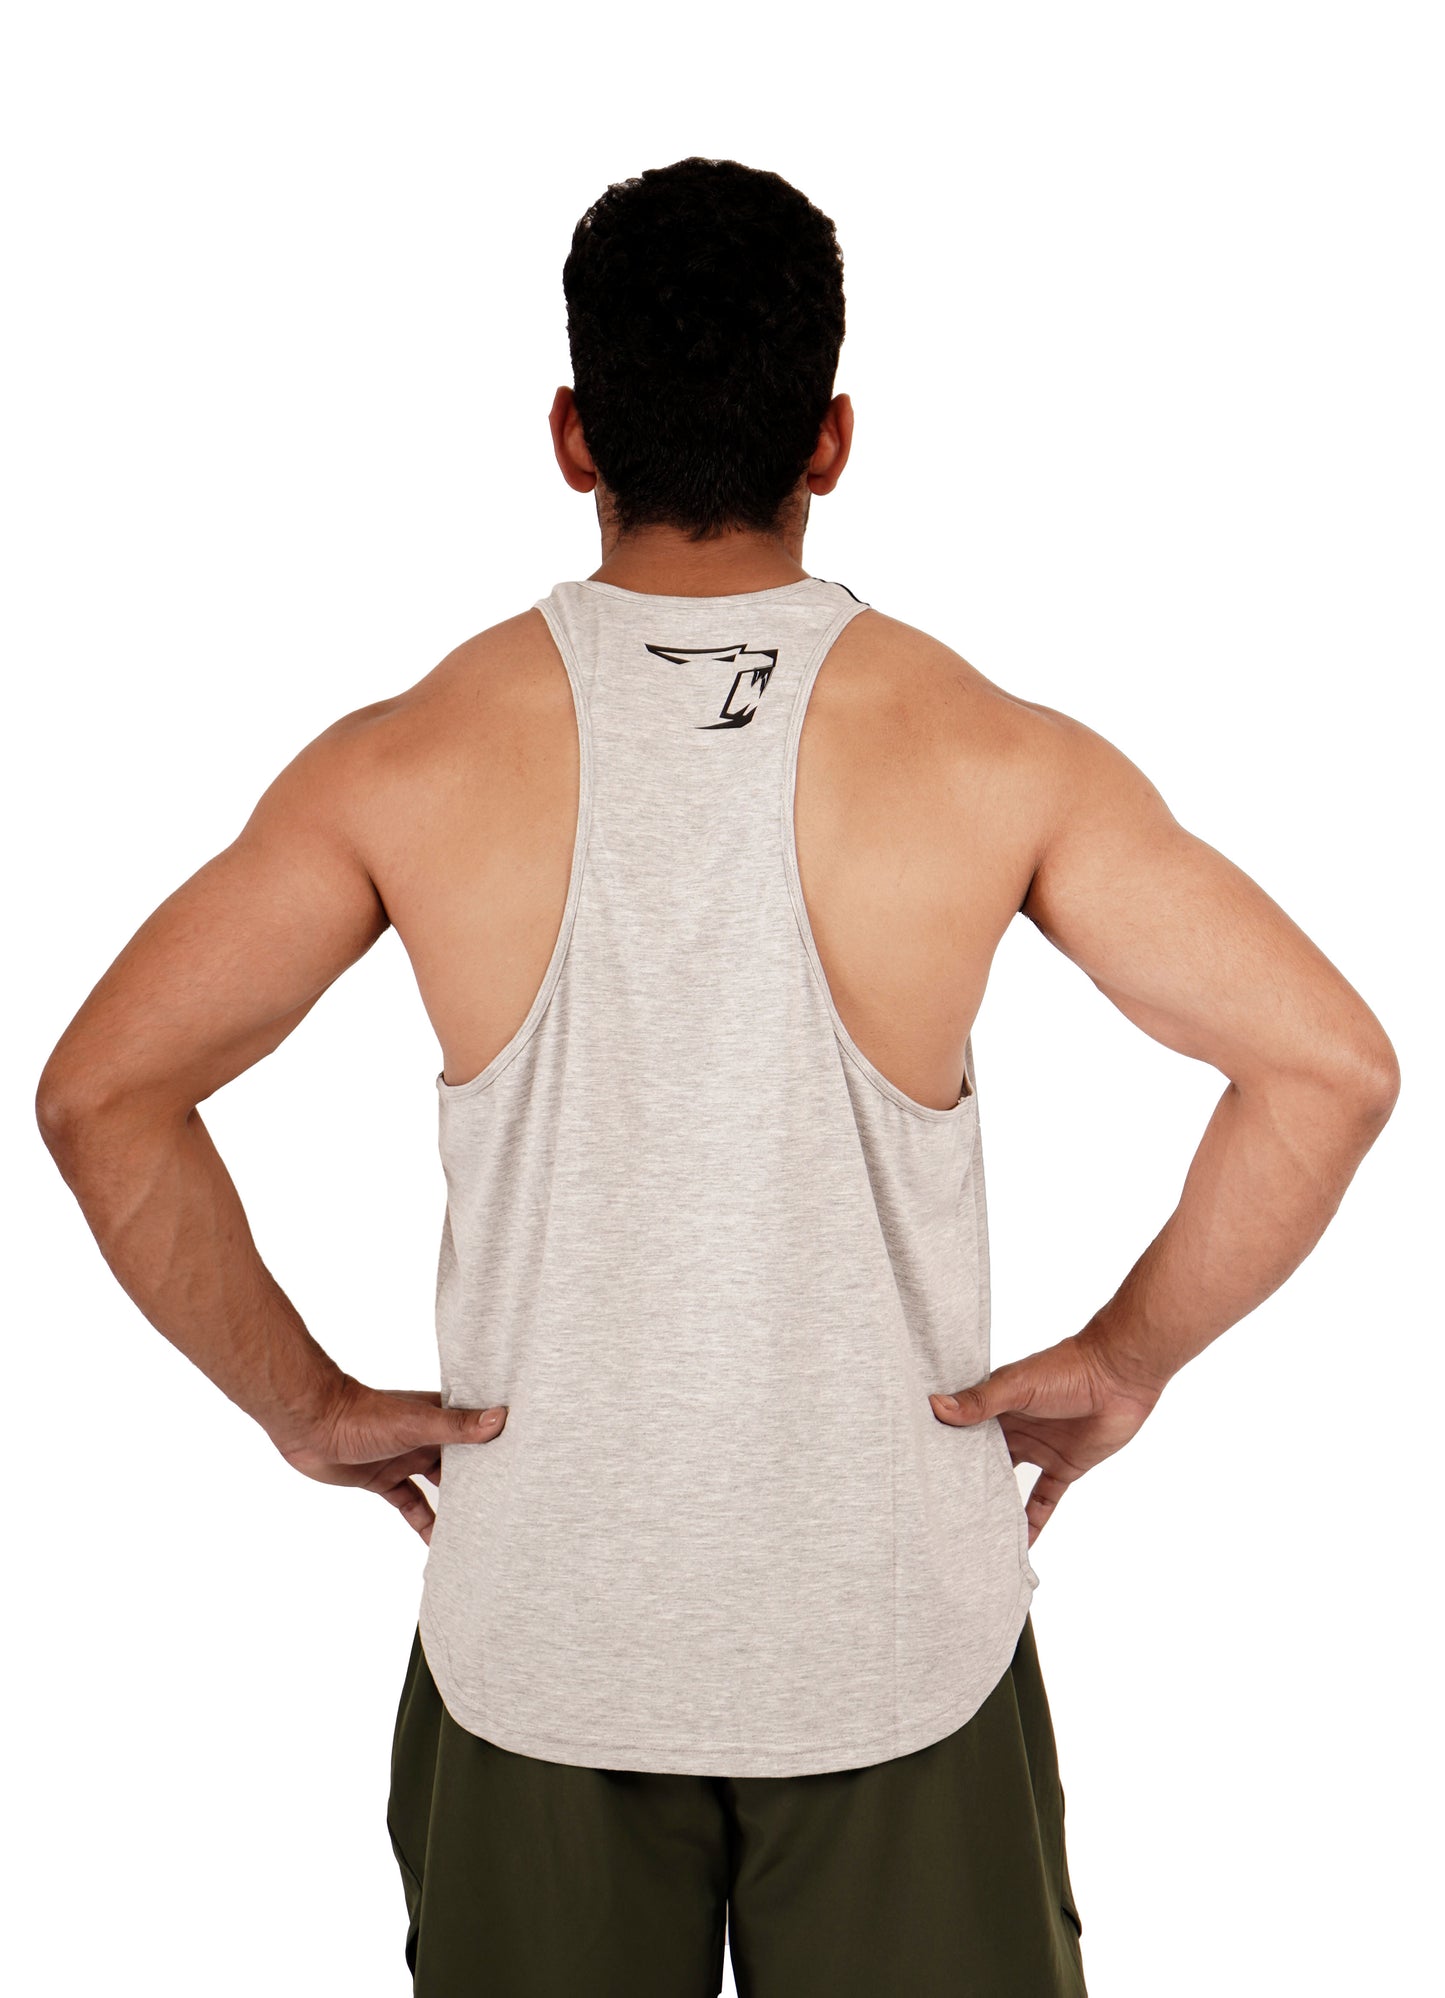 Workout Vest For Men